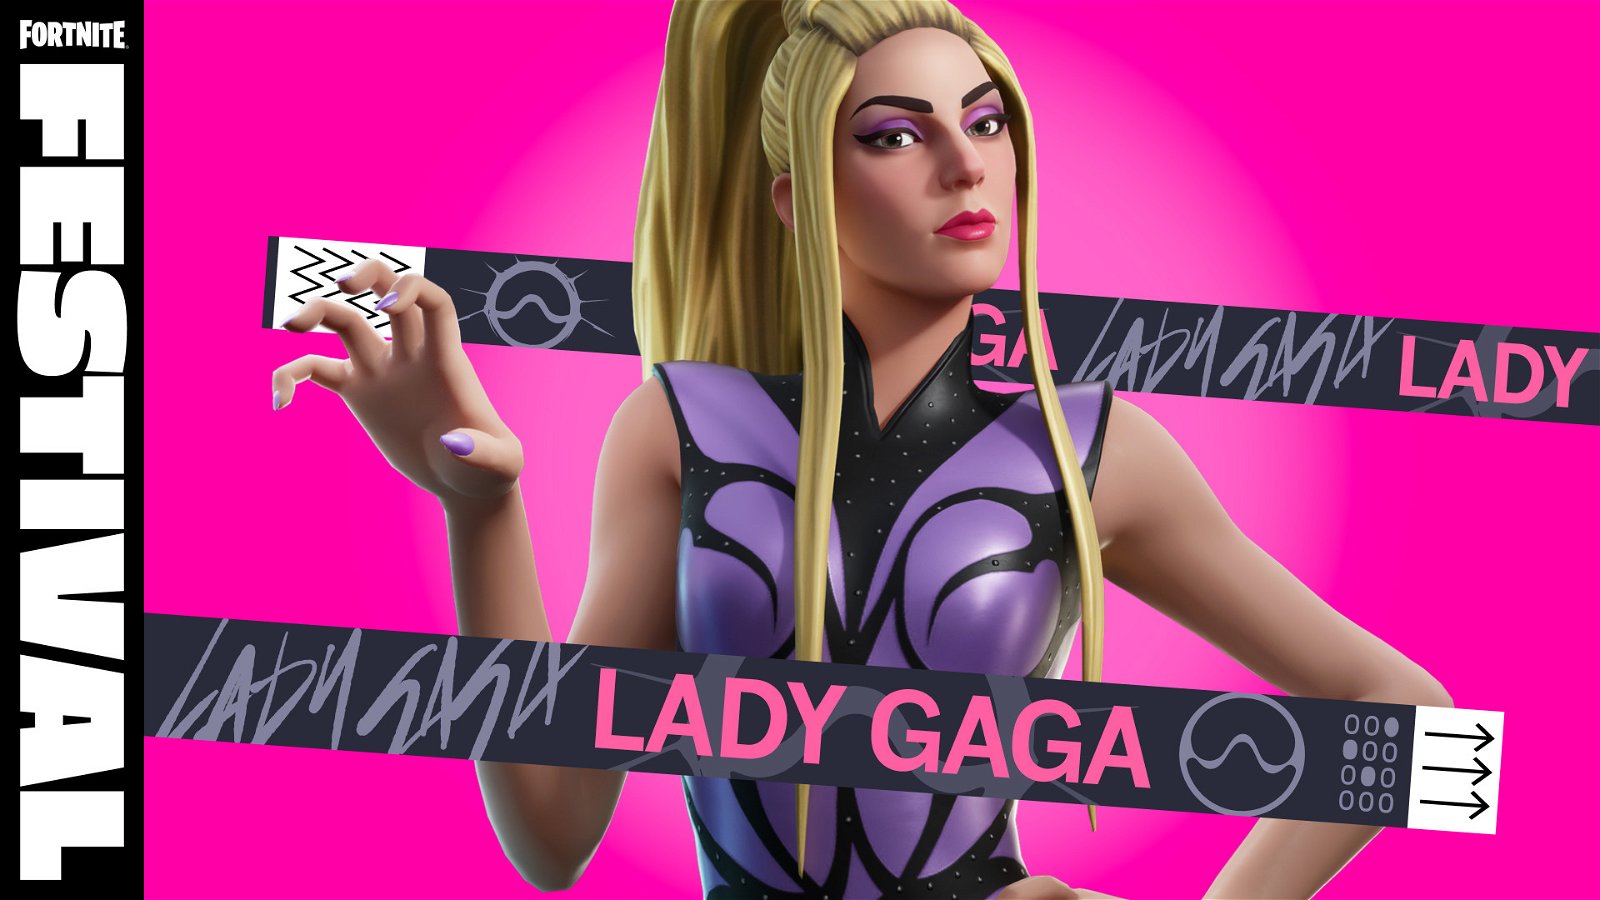 Lady Gaga sembra fatta a posta per Fortnite, e viceversa